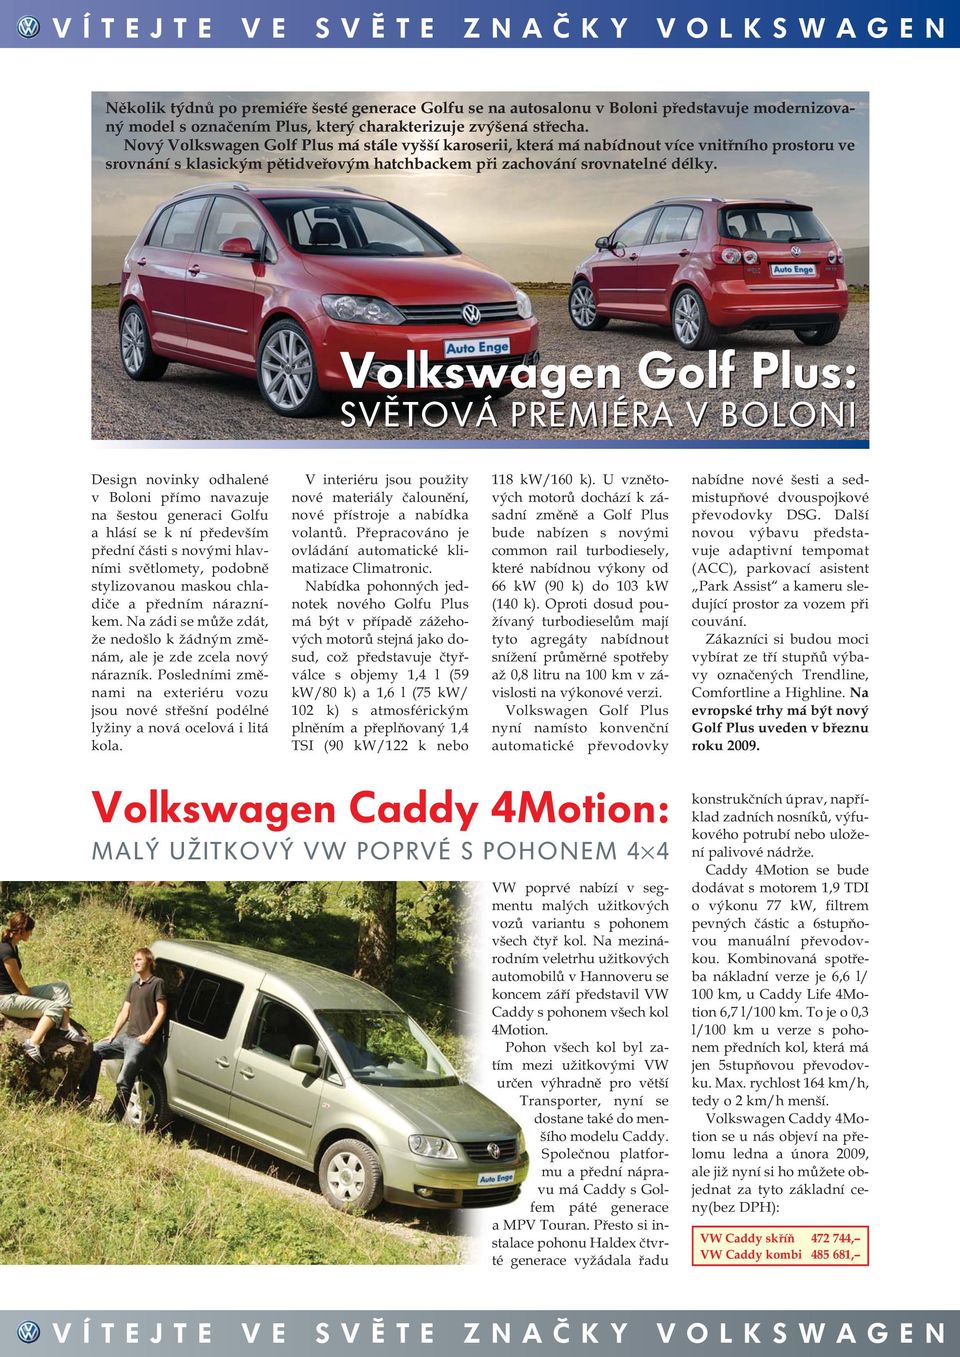 Volkswagen Golf Plus: SVĚTOVÁ PREMIÉRA V BOLONI Design novinky odhalené v Boloni přímo navazuje na šestou generaci Golfu a hlásí se k ní především přední části s novými hlavními světlomety, podobně